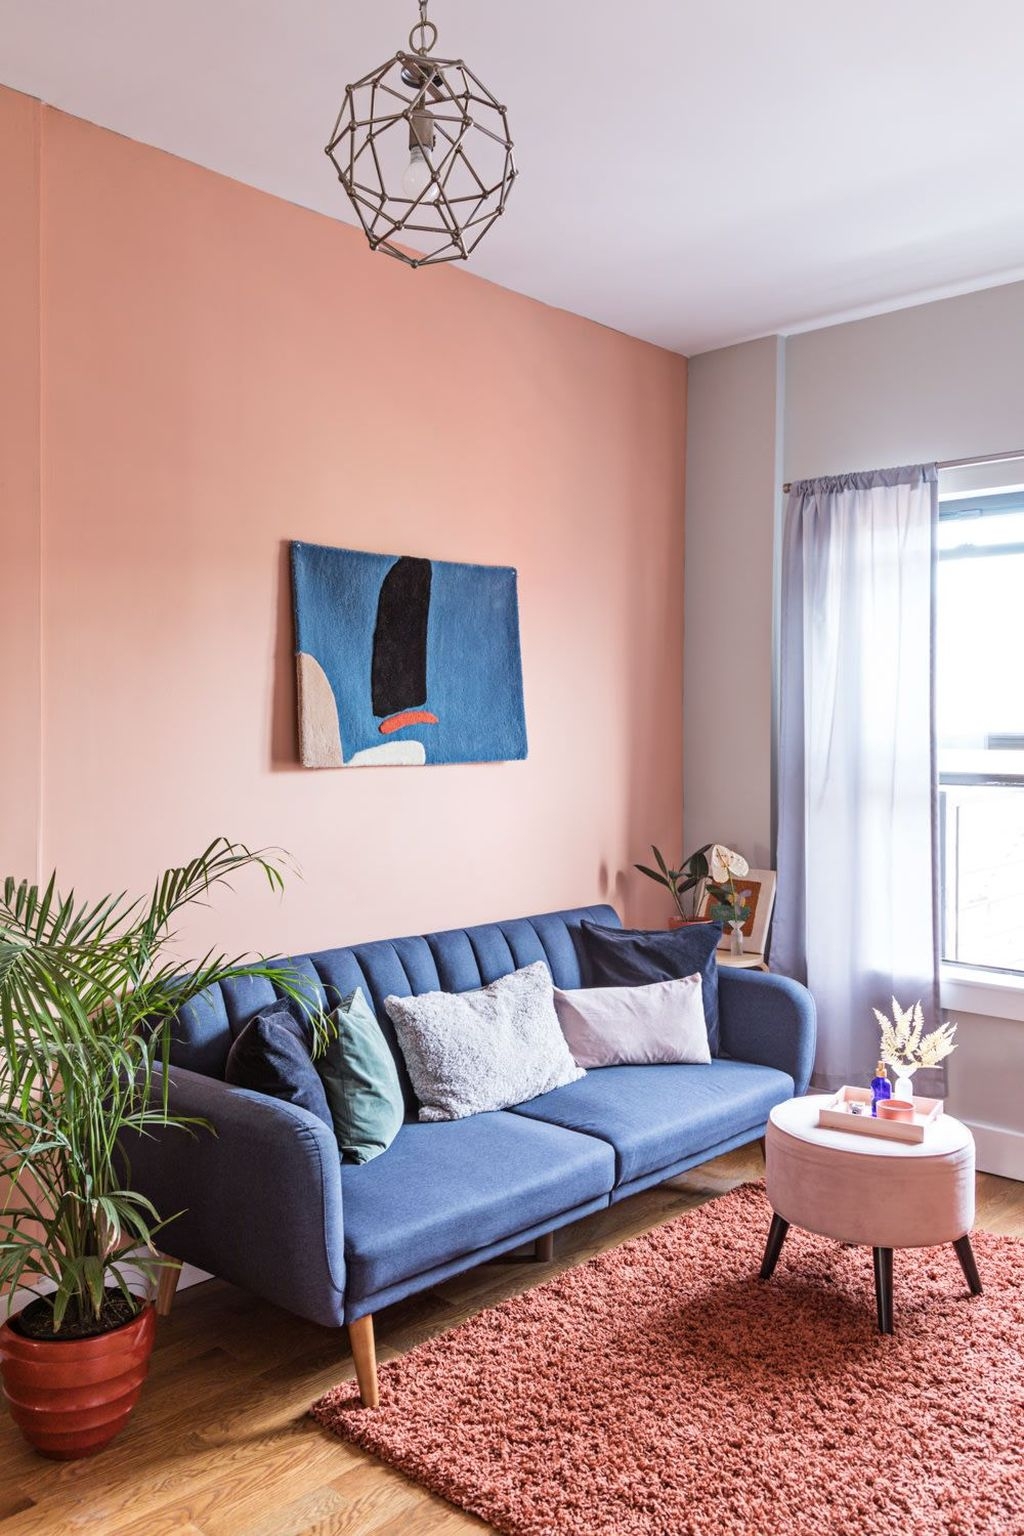 Sala com cores suaves, sendo uma parede pintada com laranja claro.